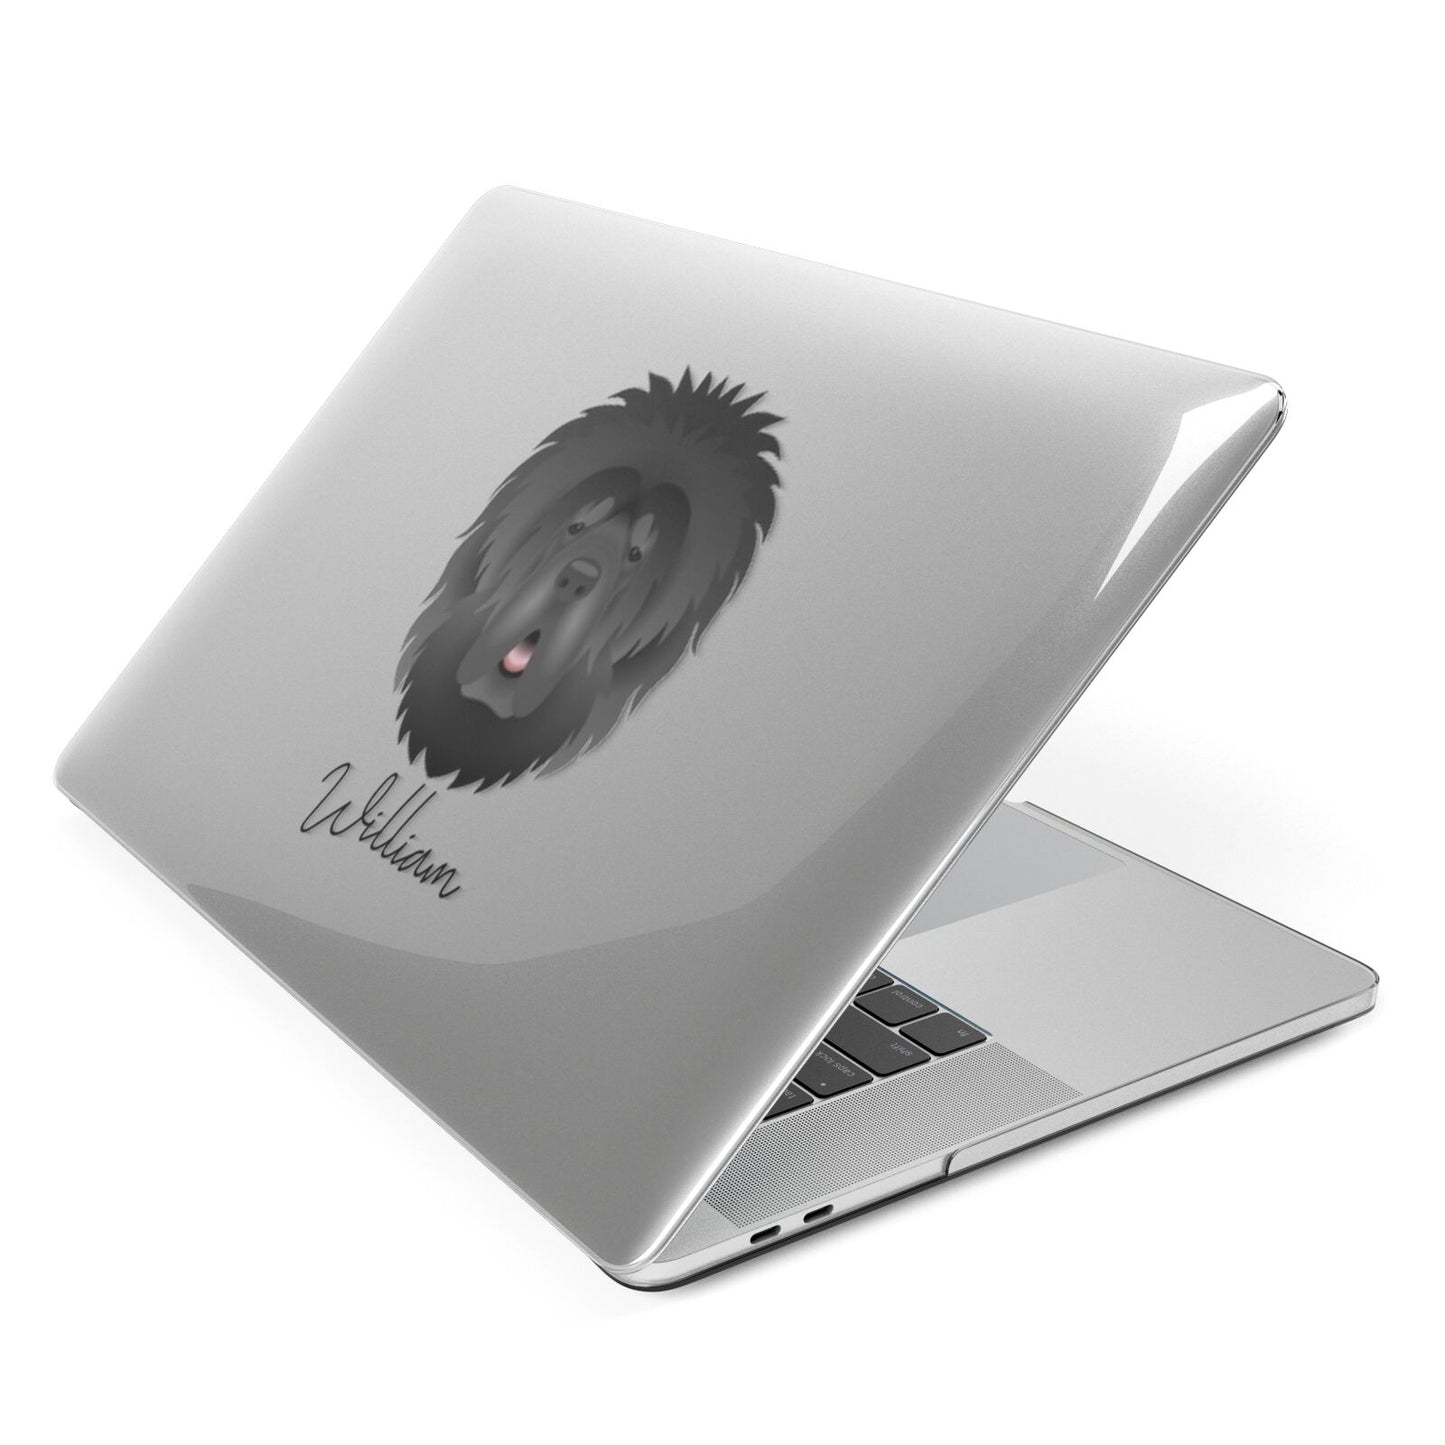 Tibetan Mastiff Personalised Apple MacBook Case Side View